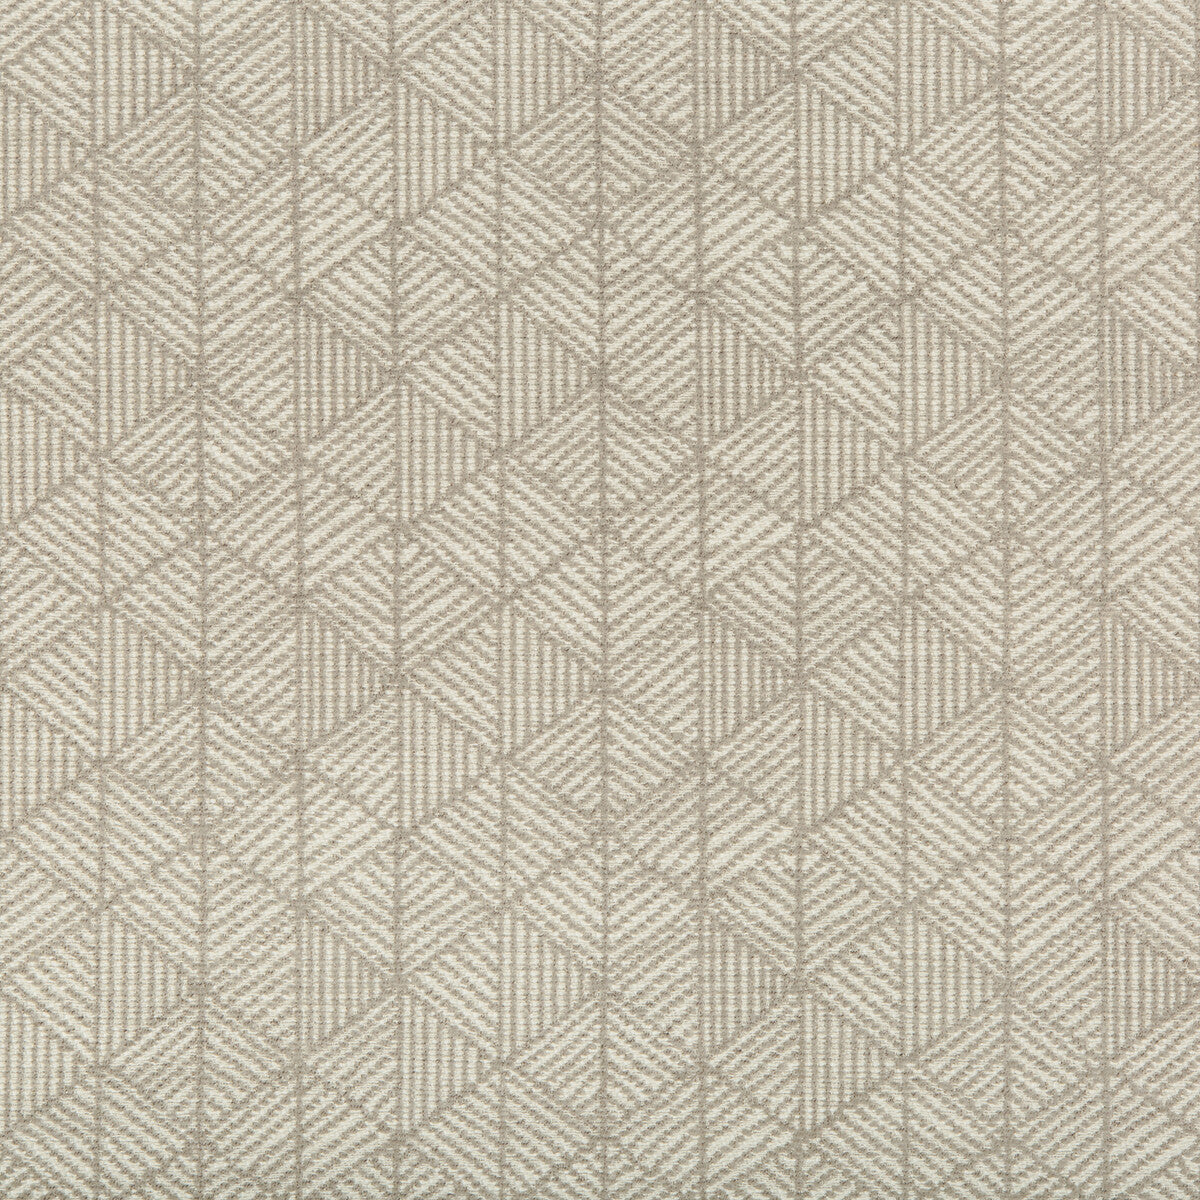 Kravet Design fabric in 35697-16 color - pattern 35697.16.0 - by Kravet Design